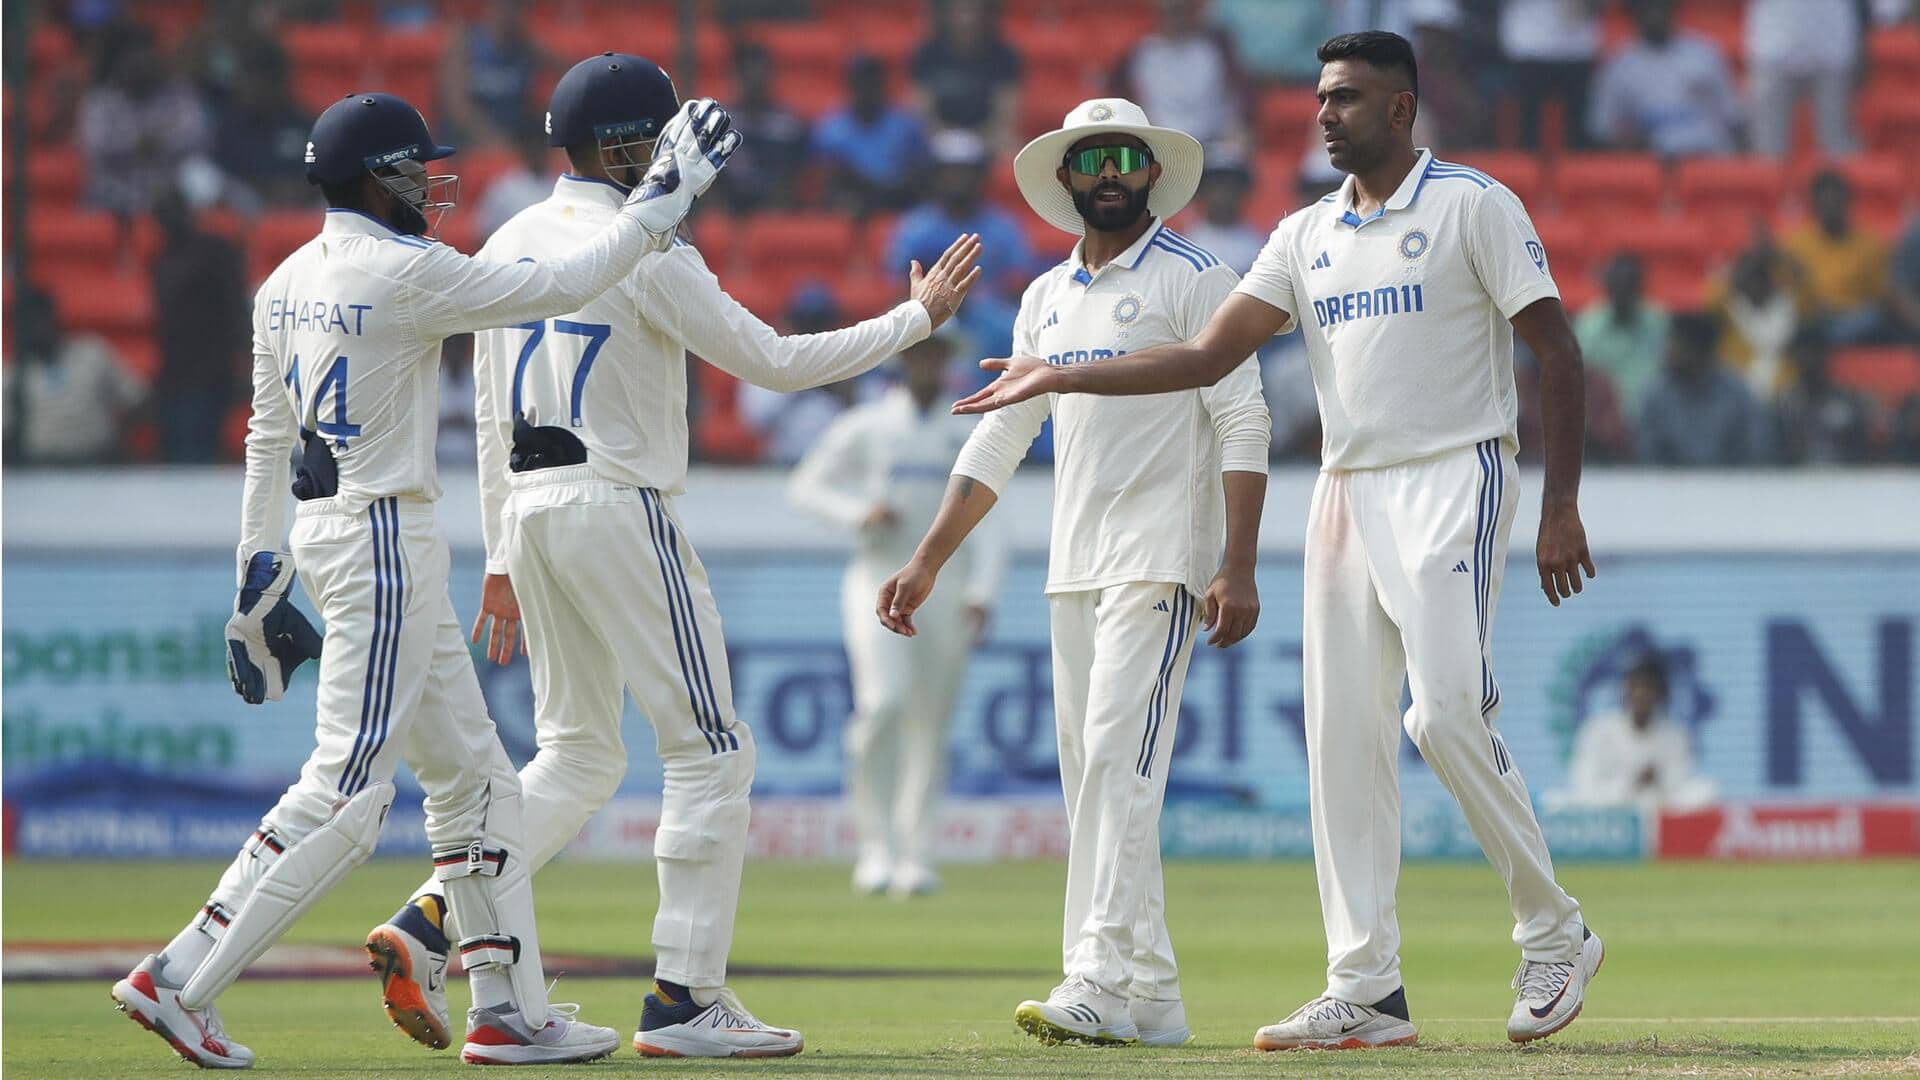 भारत बनाम इंग्लैंड, पहला टेस्ट: रविचंद्रन अश्विन ने चटकाए 3 विकेट, जानिए उनके आंकड़े